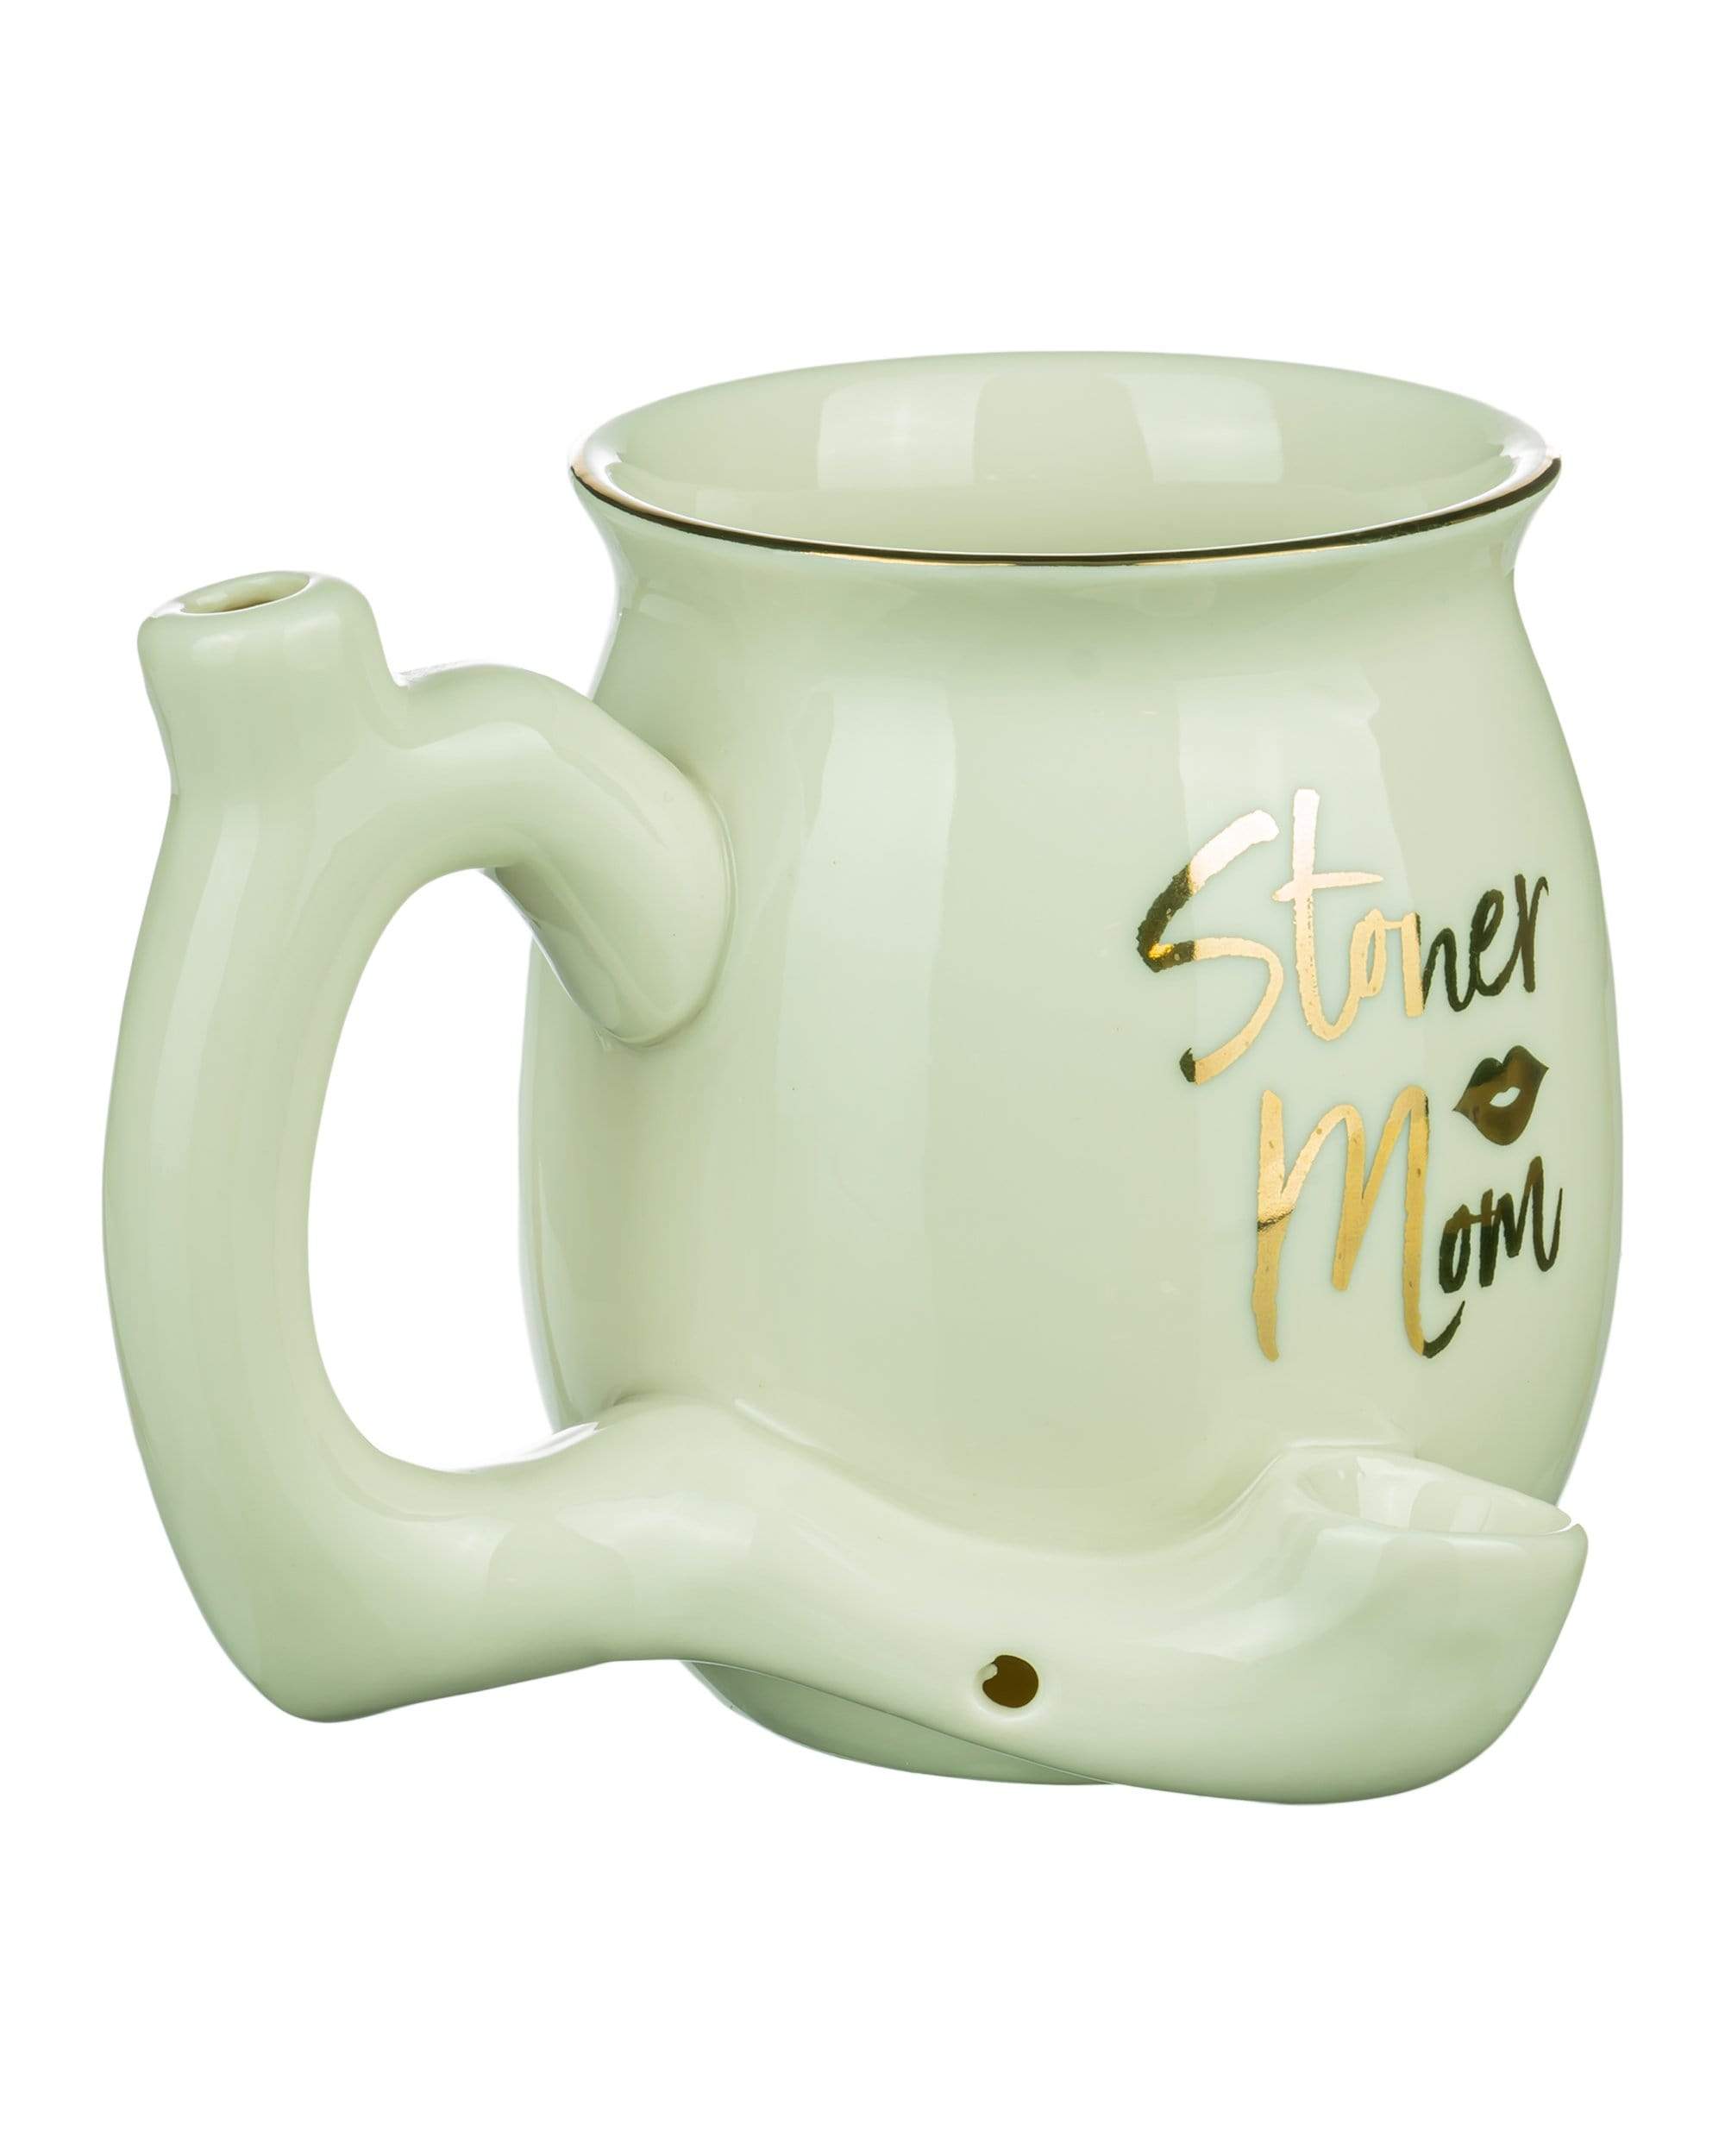 roast toast stoner mom small pipe mug hand pipe 14332645965898